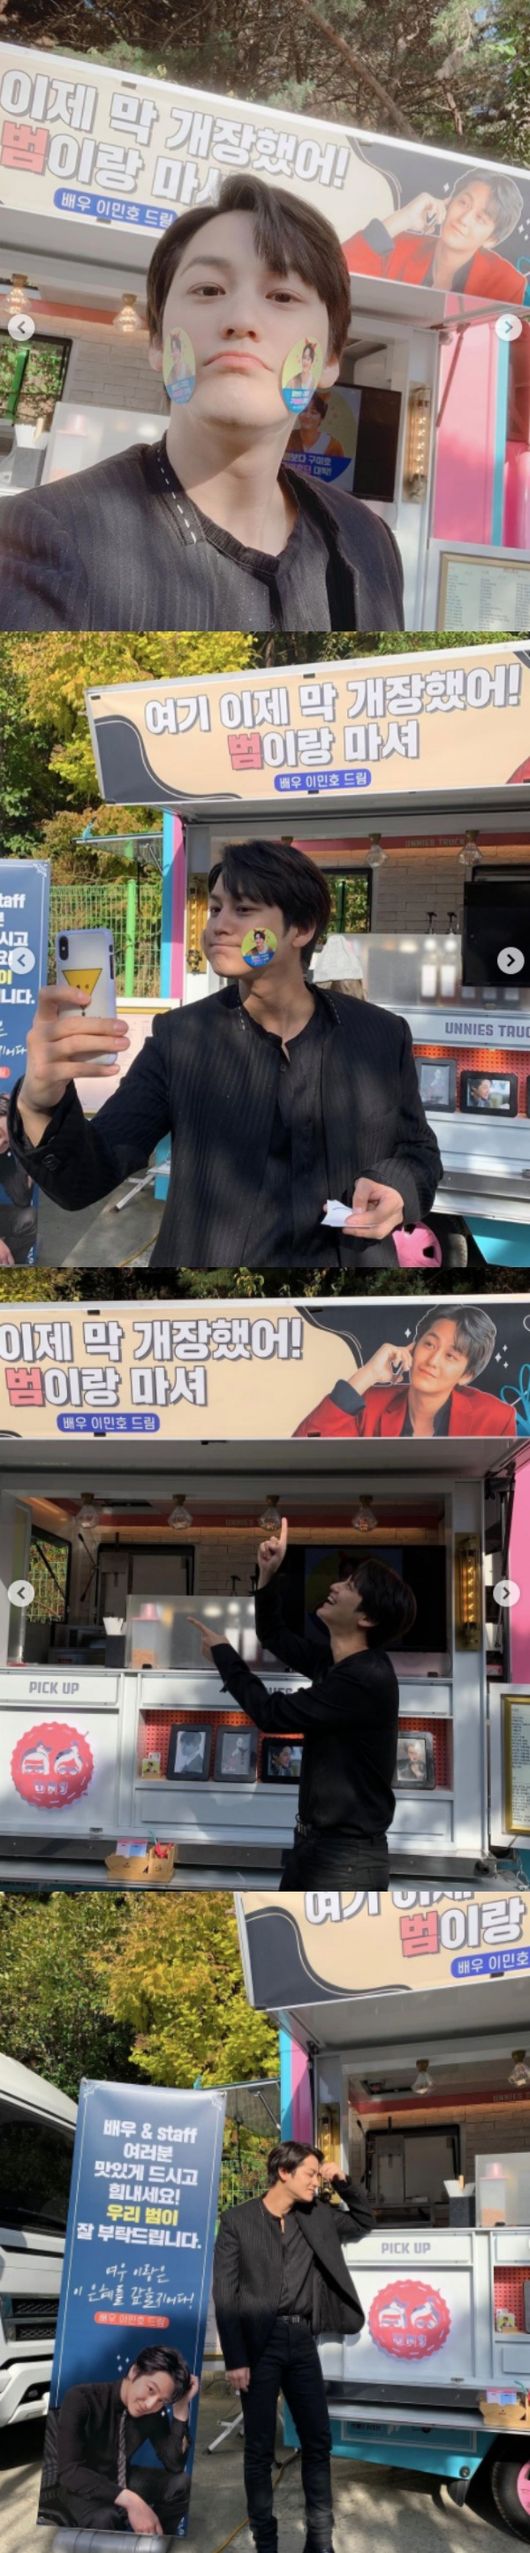 [사진=김범 SNS] 배우 김범이 이민호에게 받은 커피 차 선물을 인증했다.